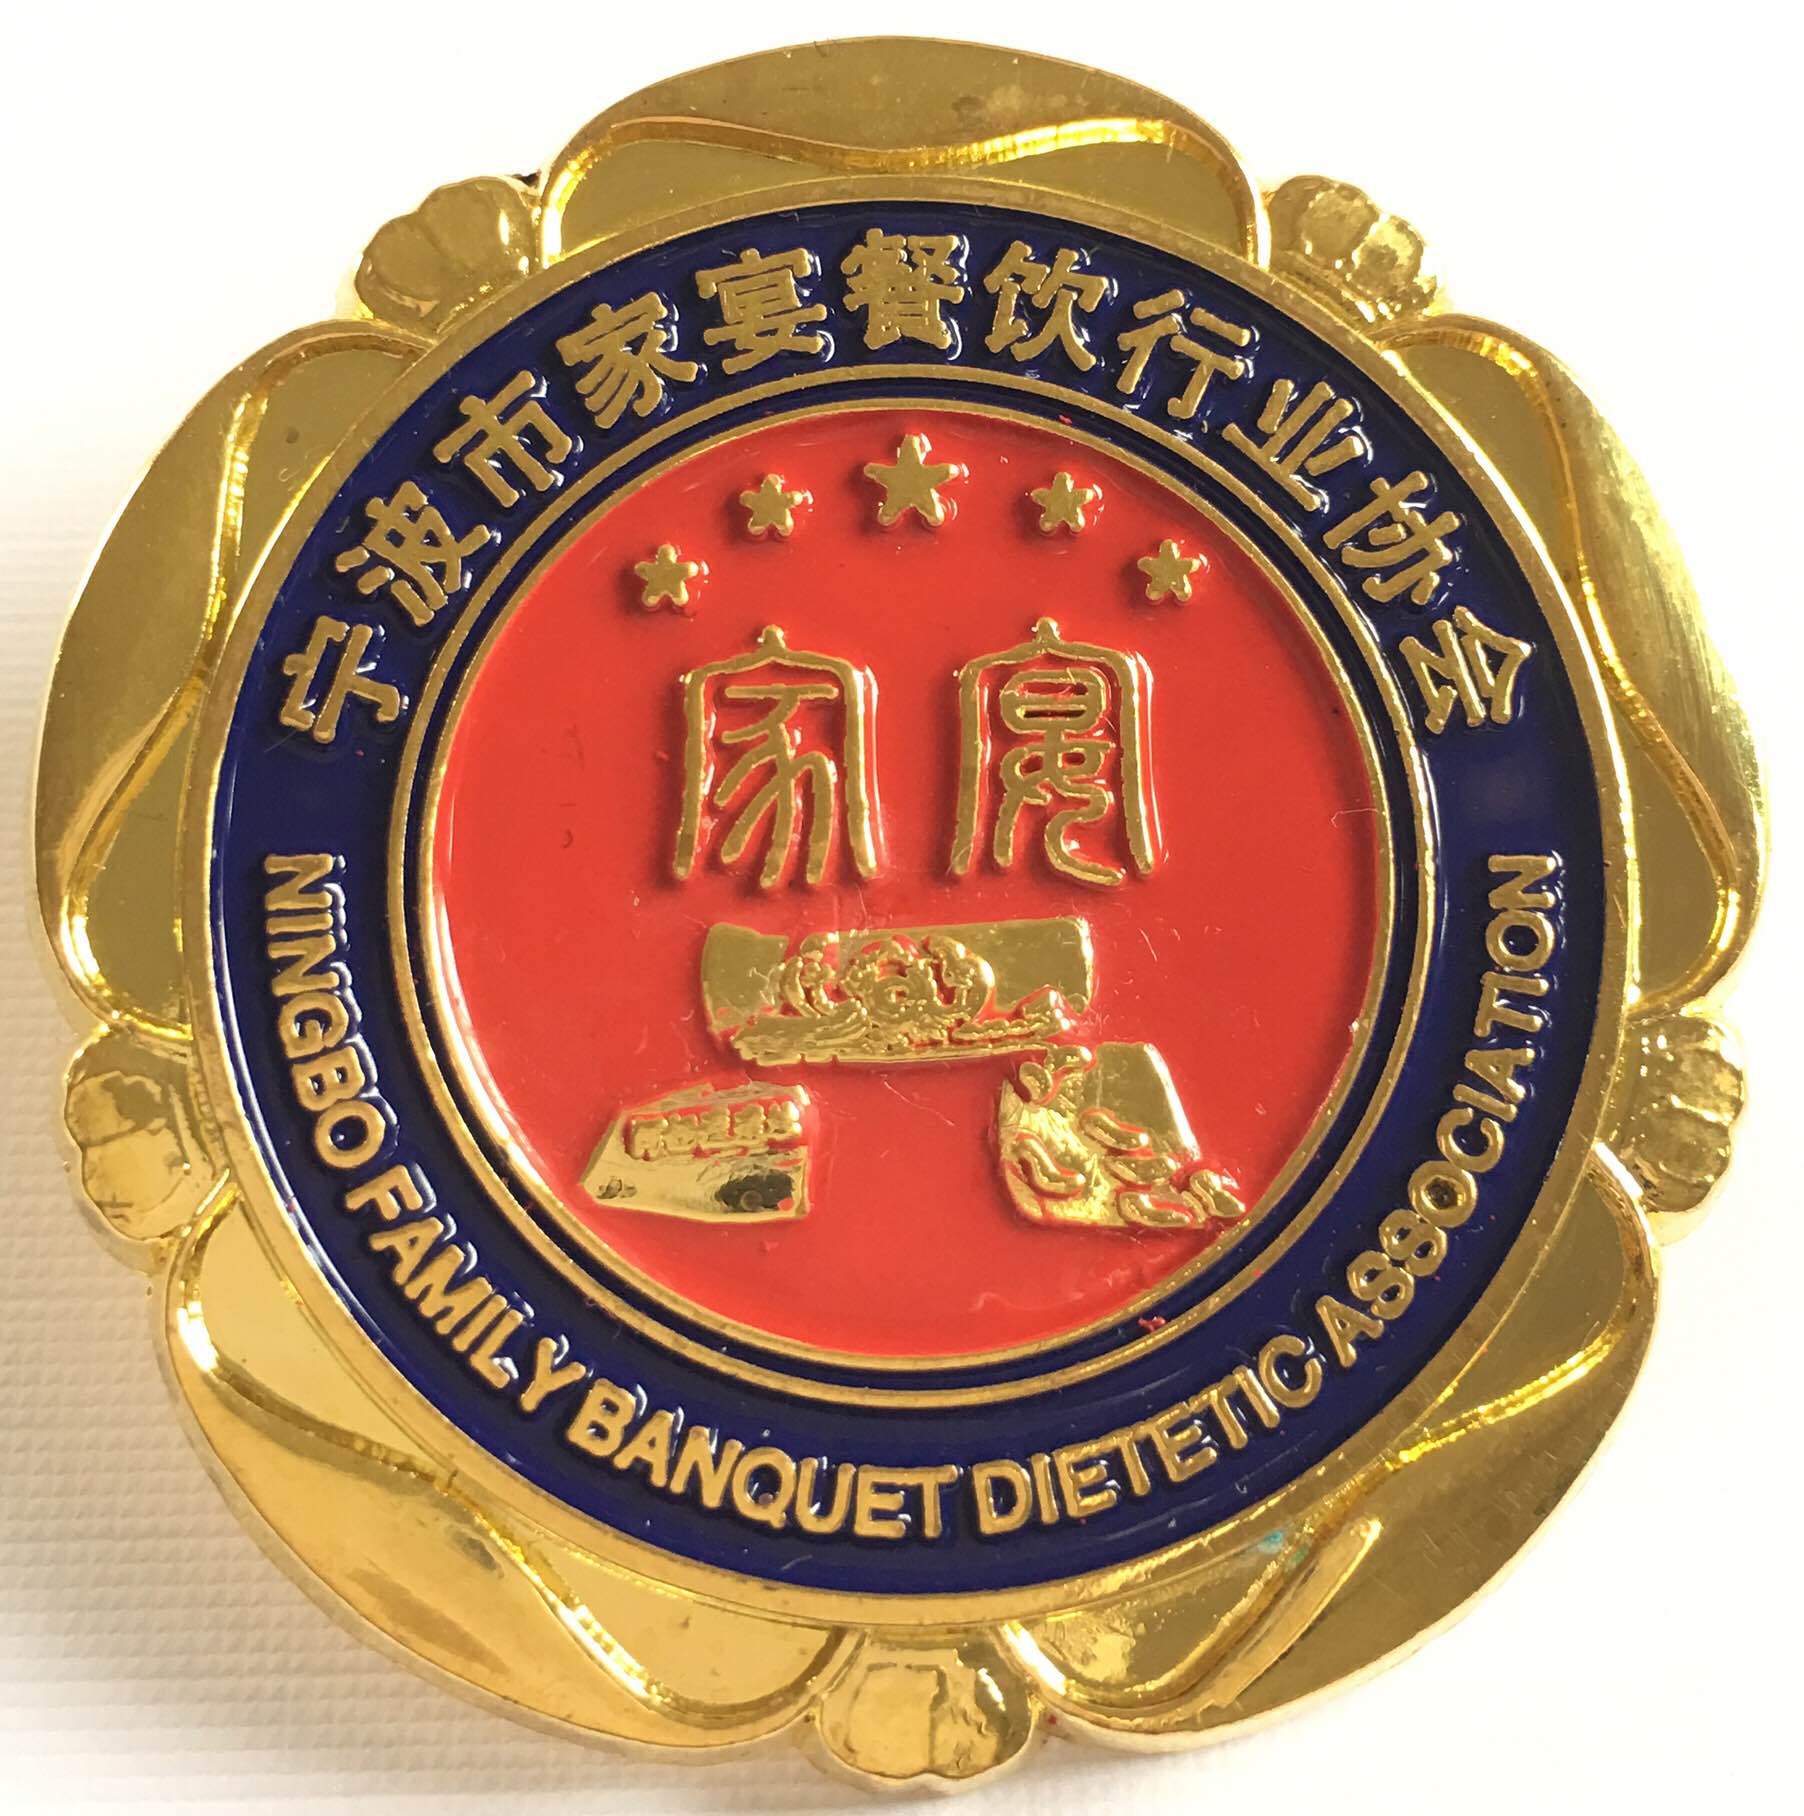 寧波市家宴餐飲行業協會榮譽勳章